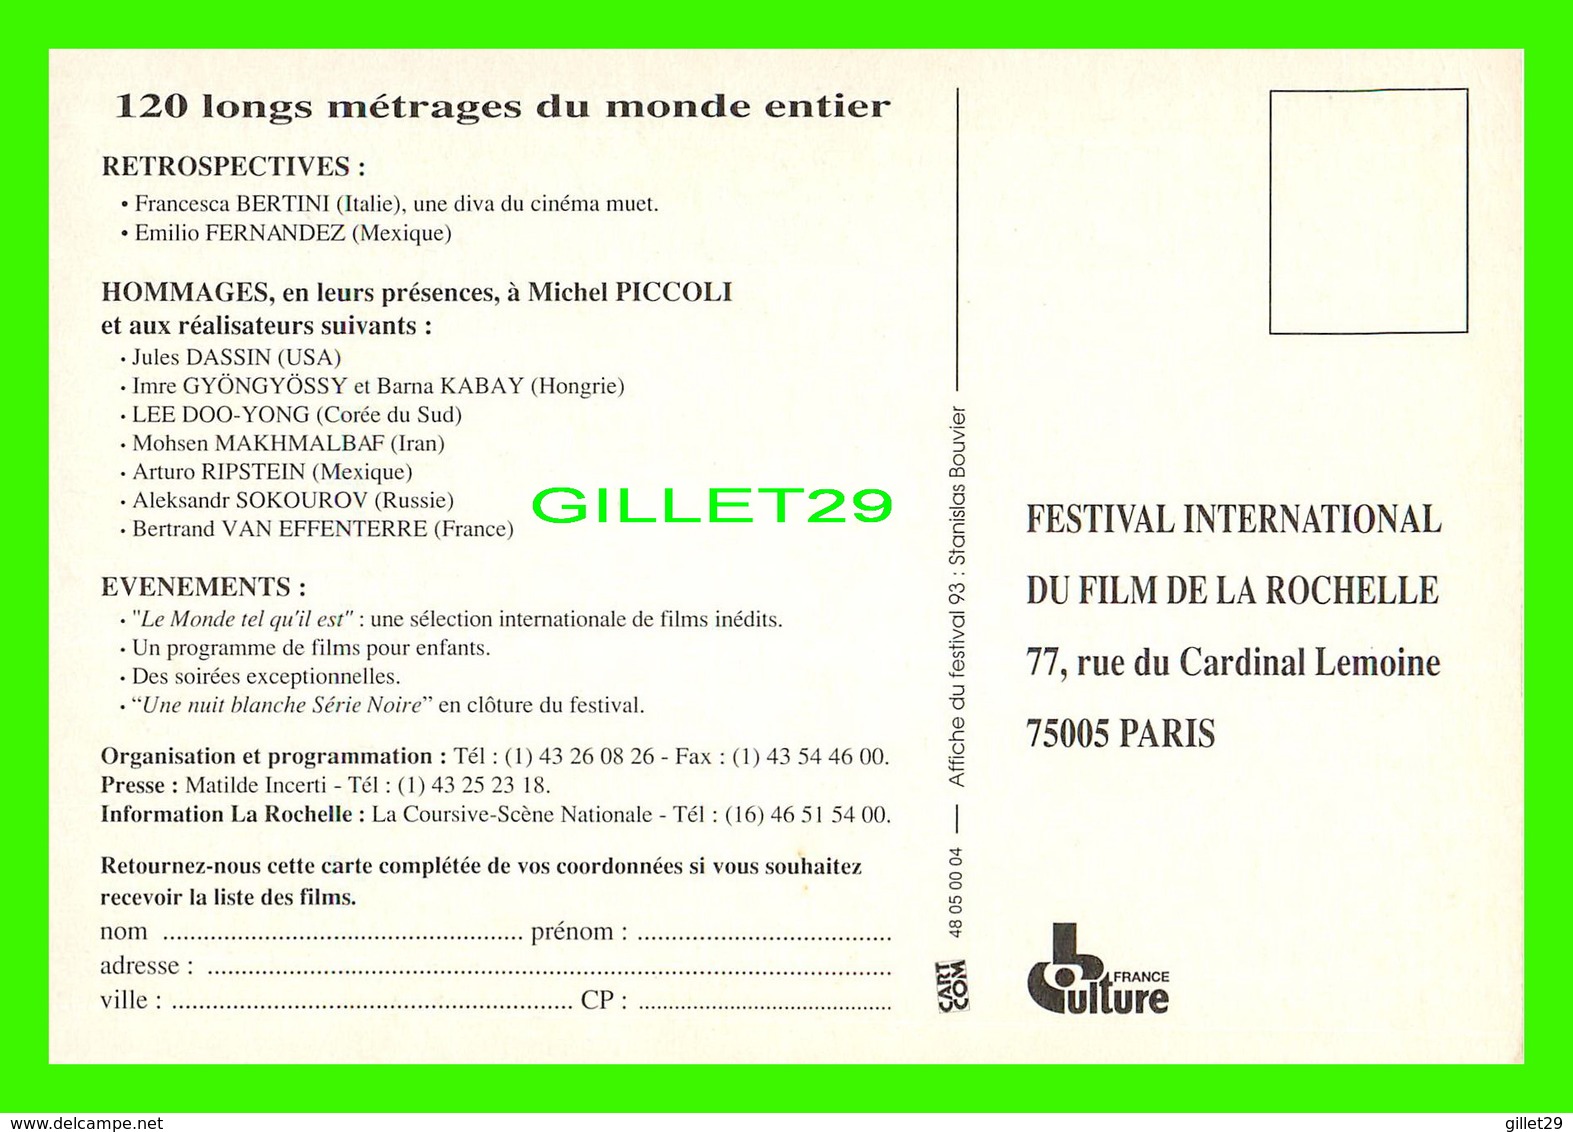 ADVERTISING, PUBLICITÉ - LOT DE 13 CARTES - FESTIVAL INTERNATIONAL DU FILM DE LA ROCHELLE DE 1992 À 2005 -